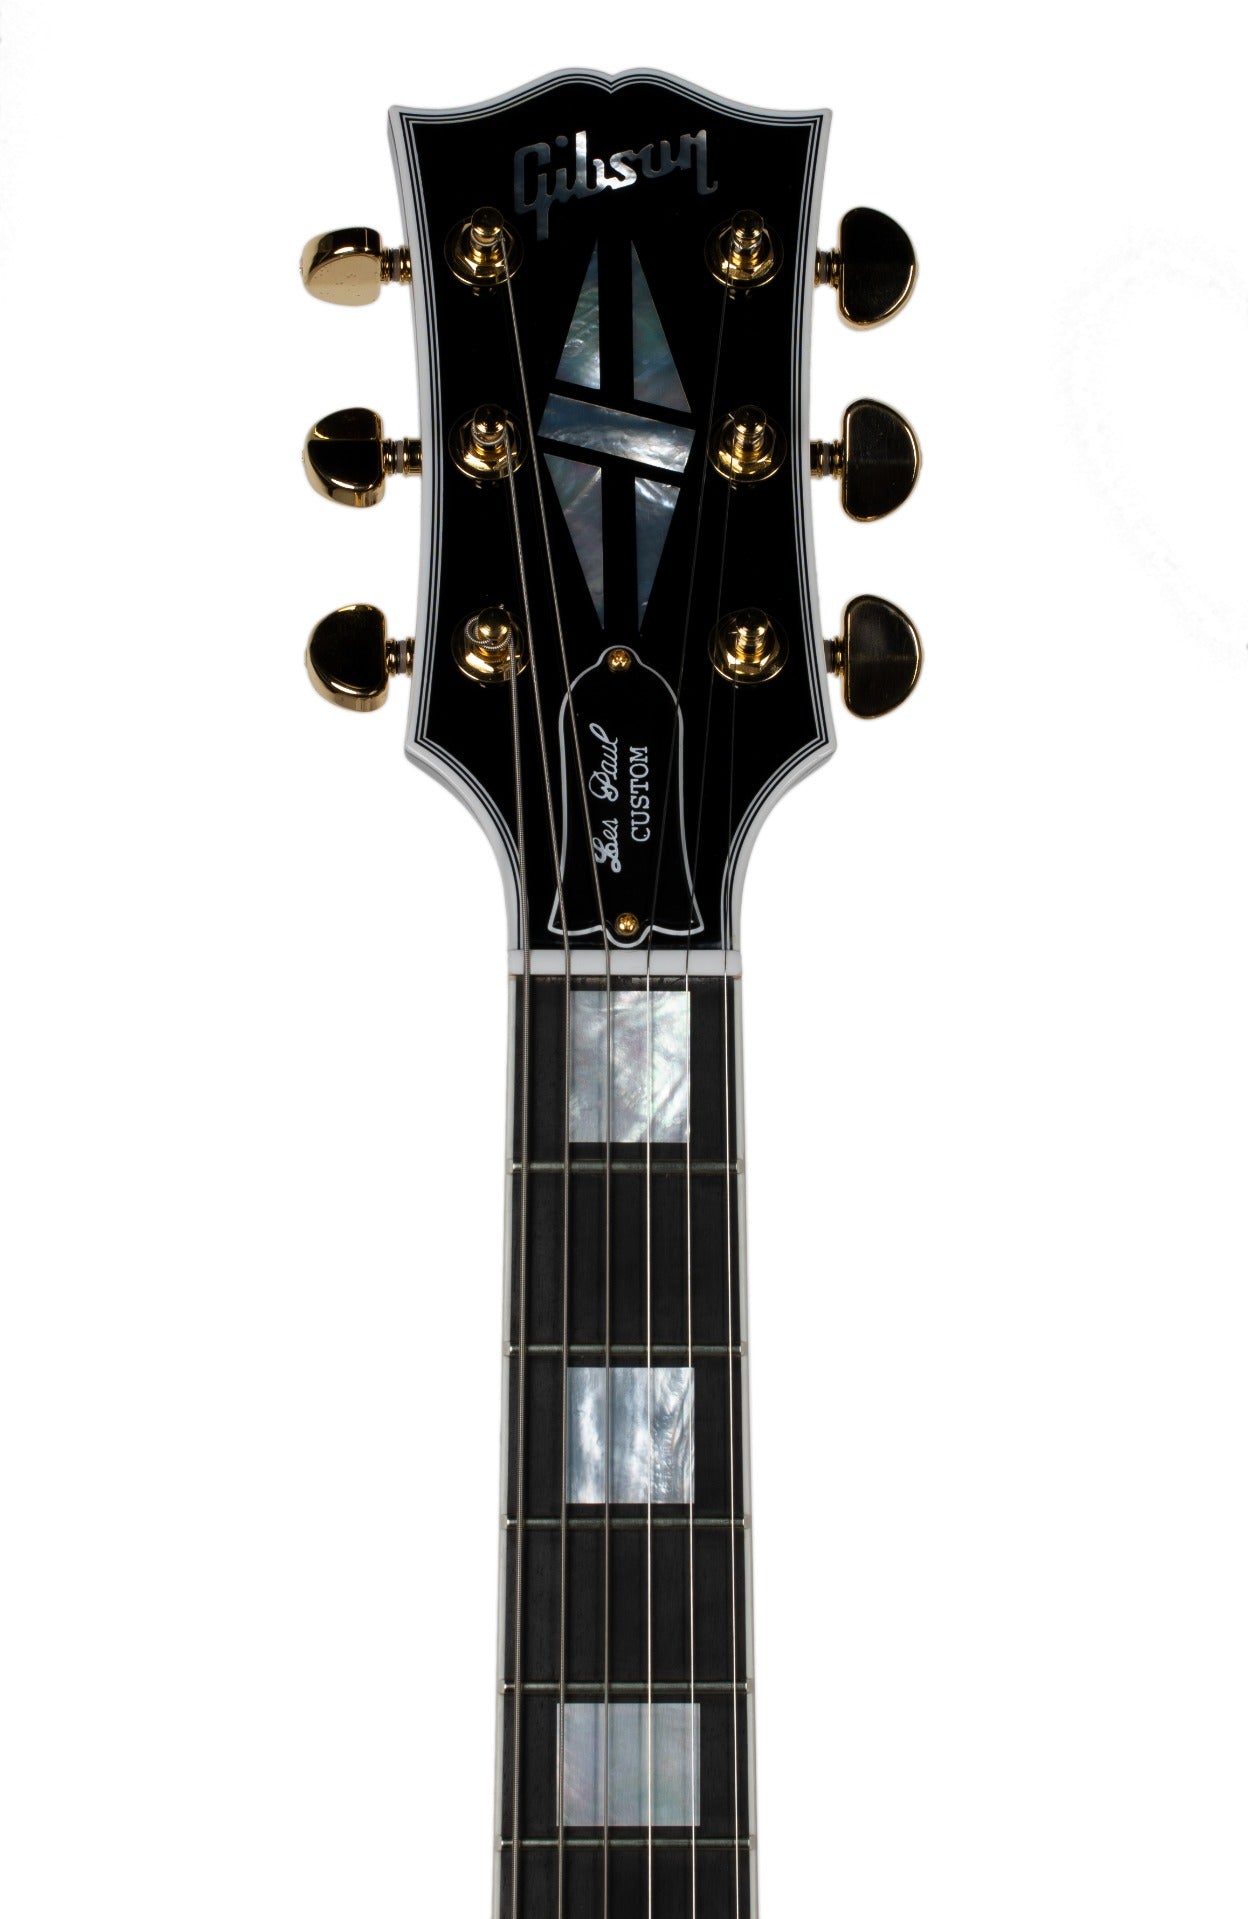 Gibson Les Paul Custom in Ebony with Ebony Fingerboard